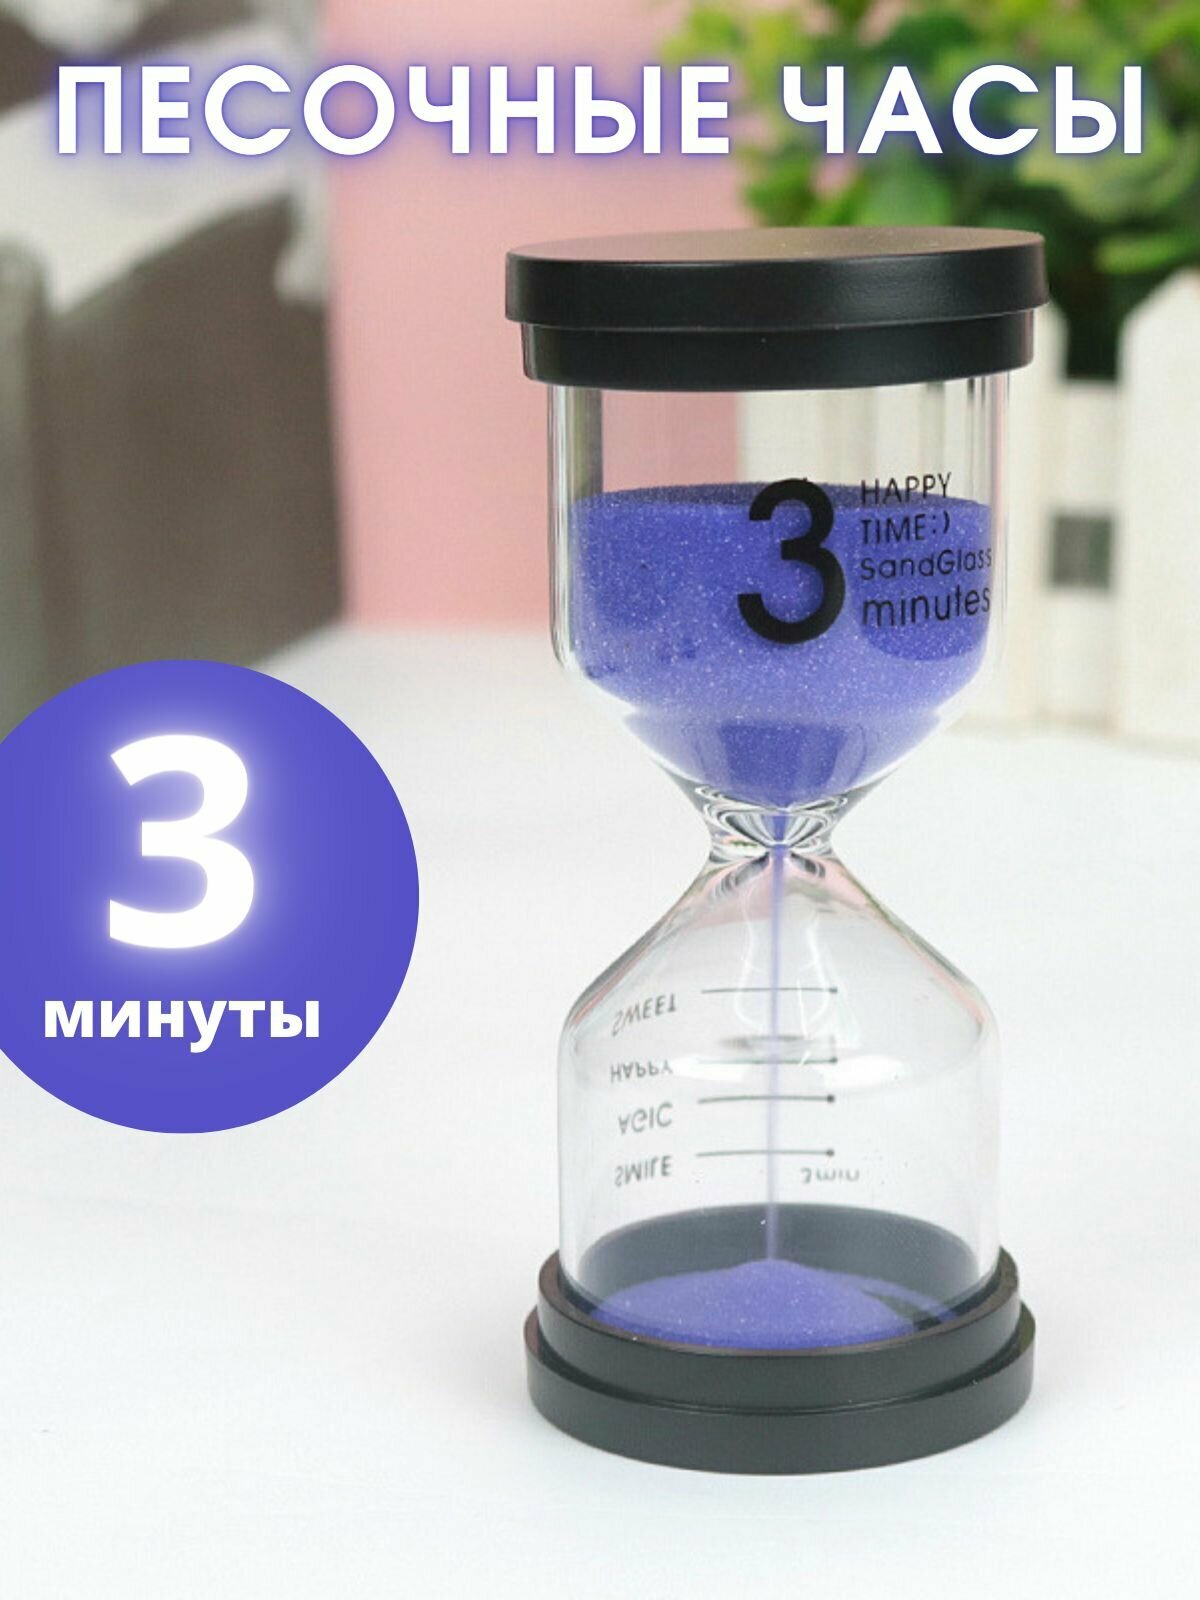 Часы песочные 3 минуты фиолетовый